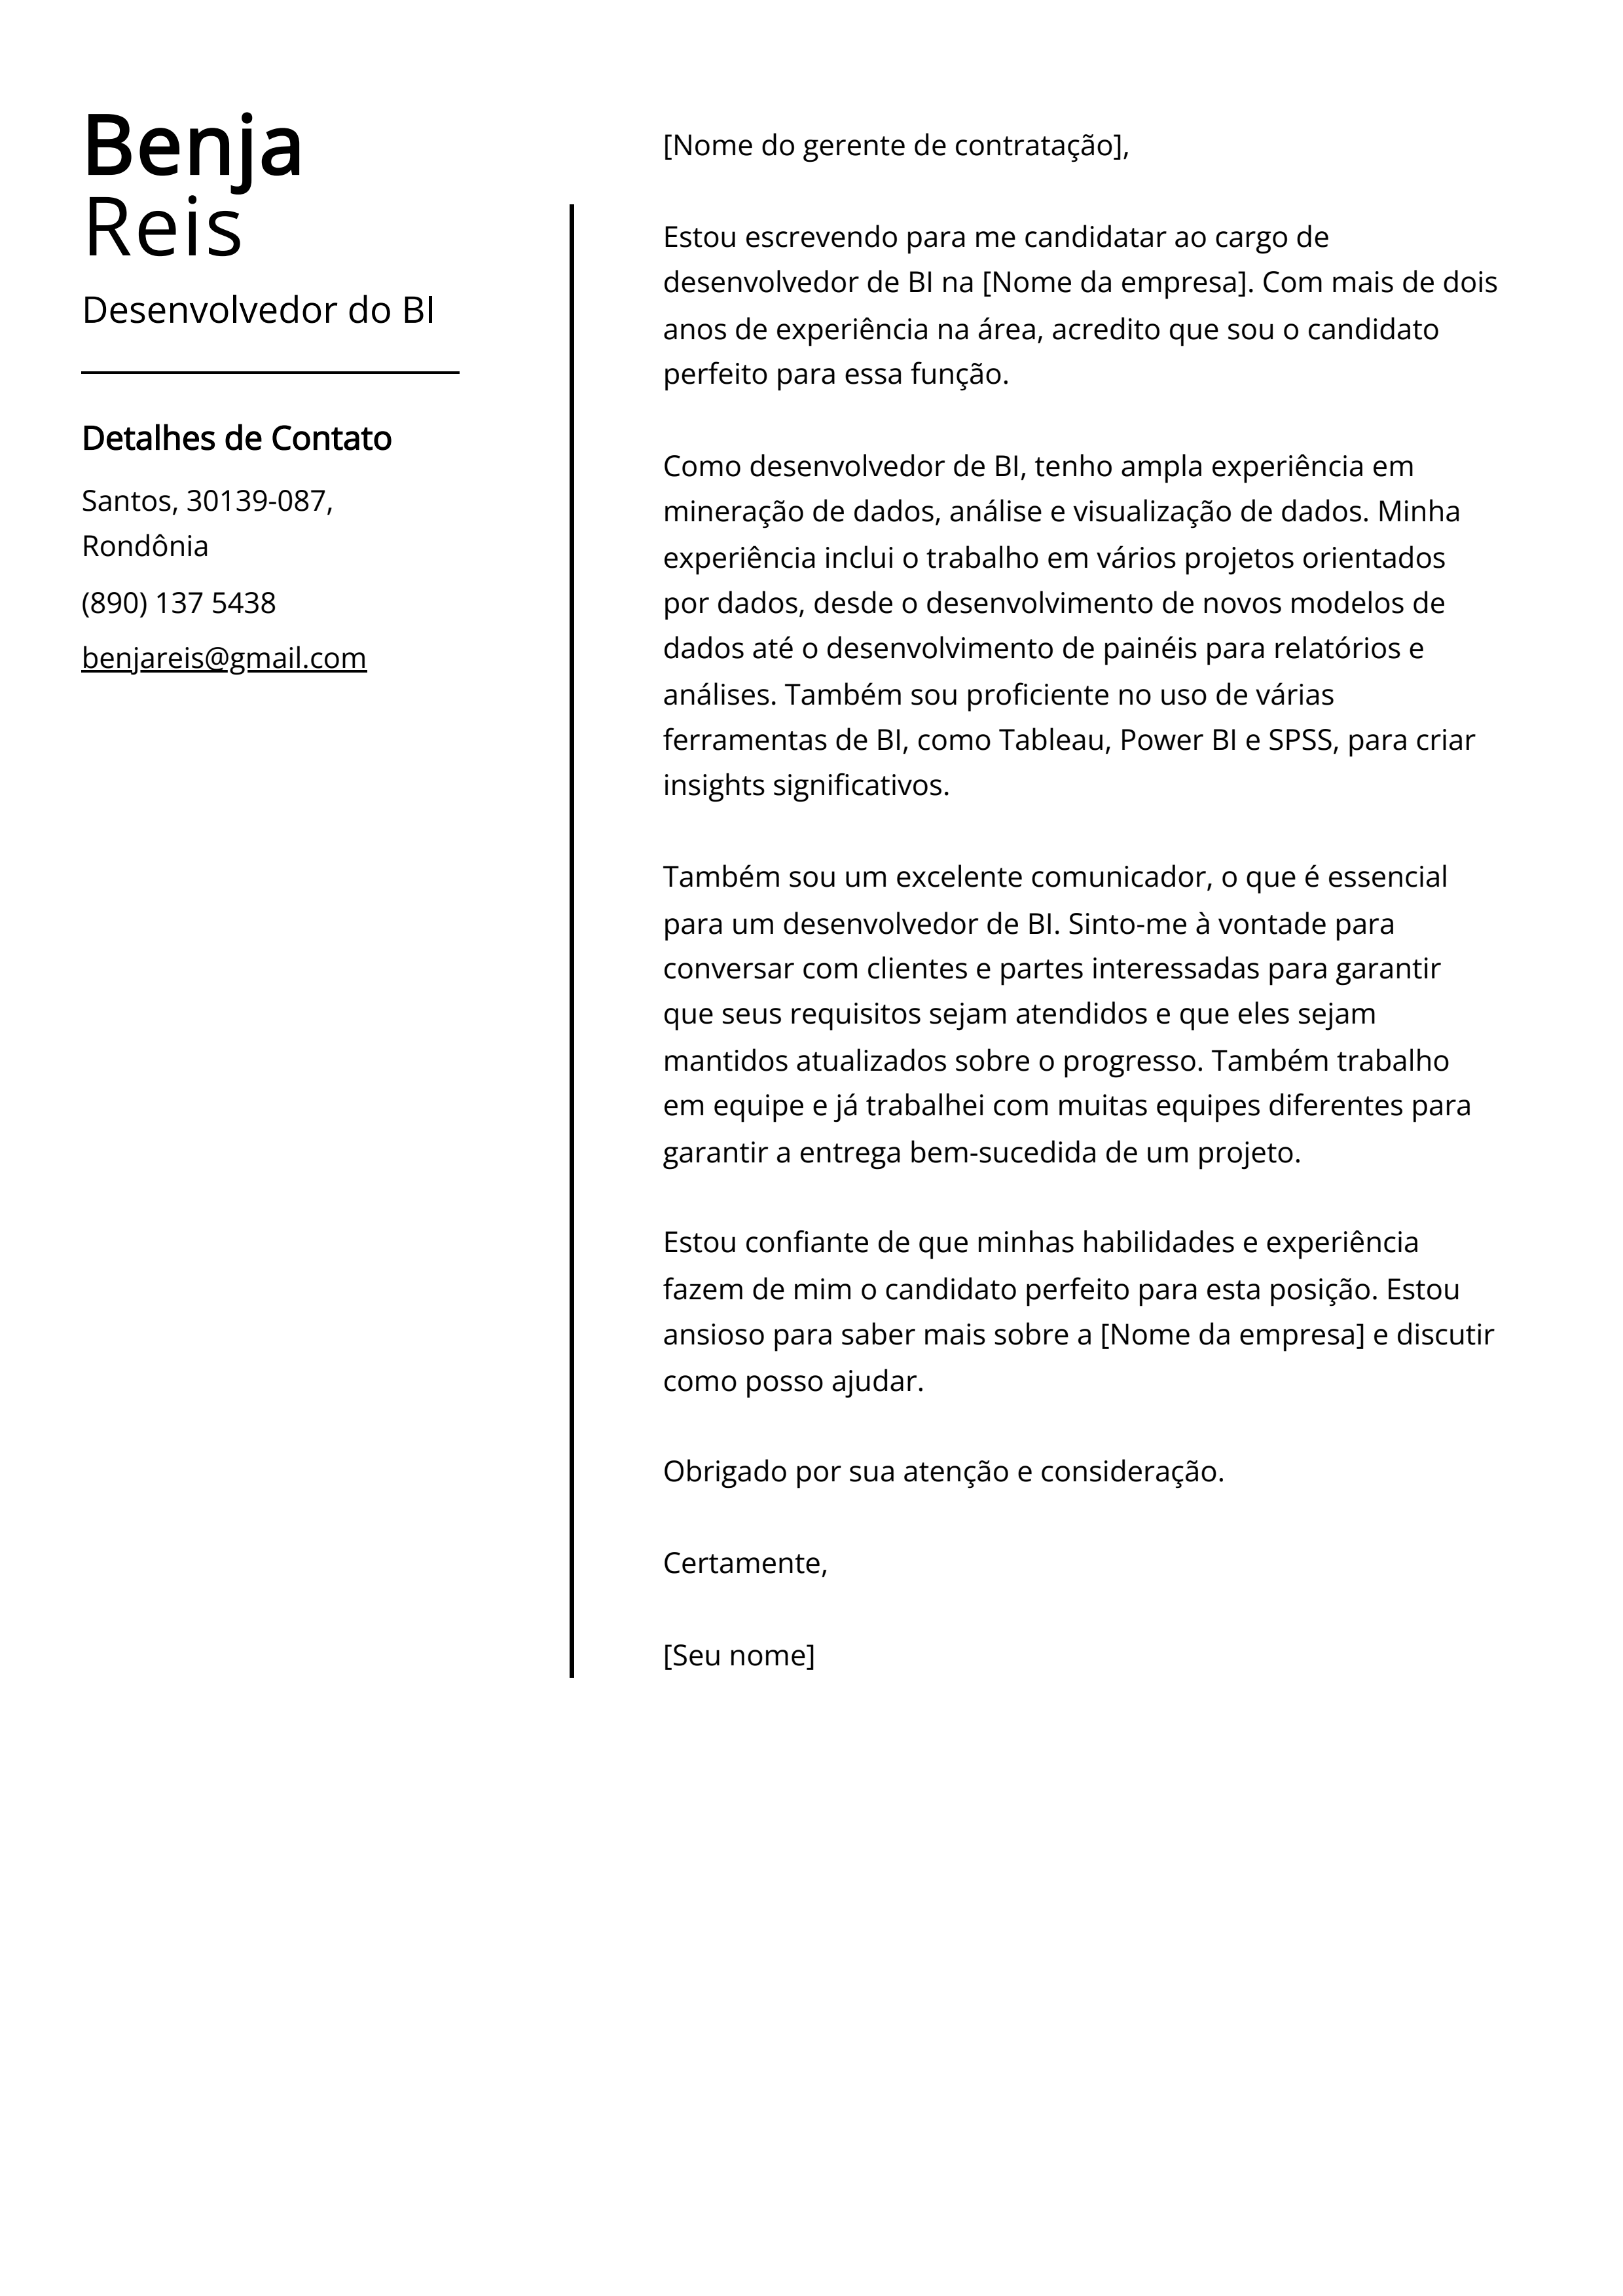 Exemplo de carta de apresentação do Desenvolvedor do BI